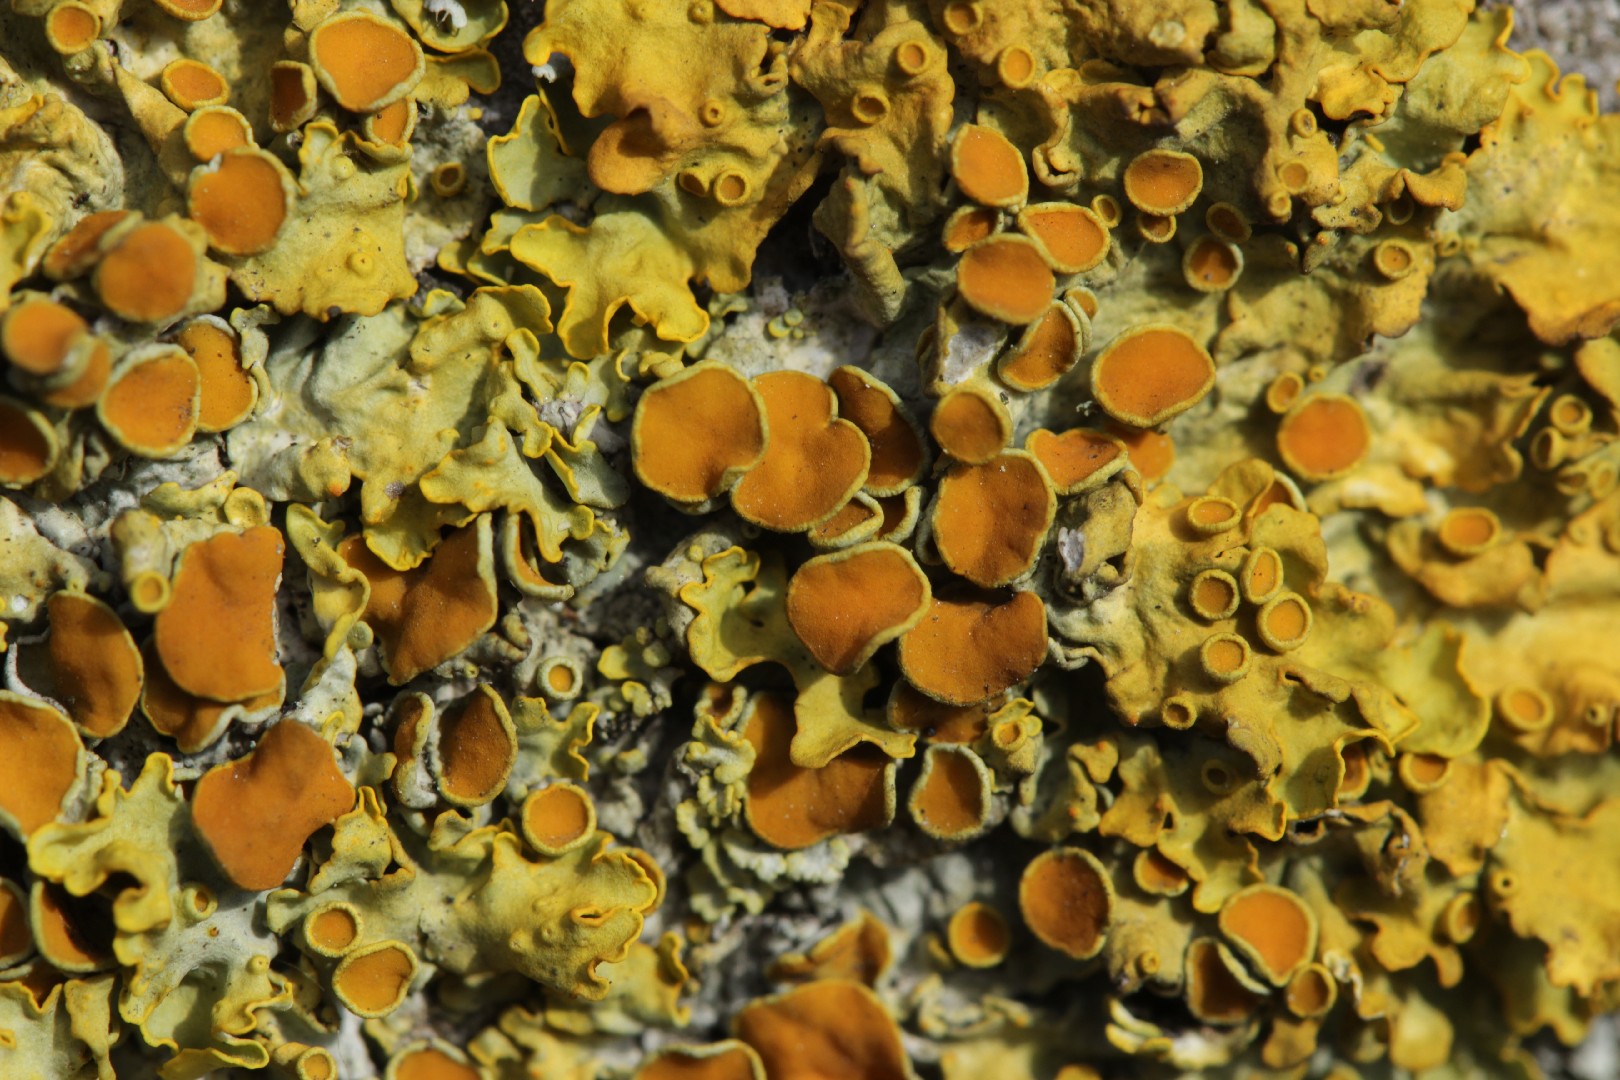 Common orange lichen